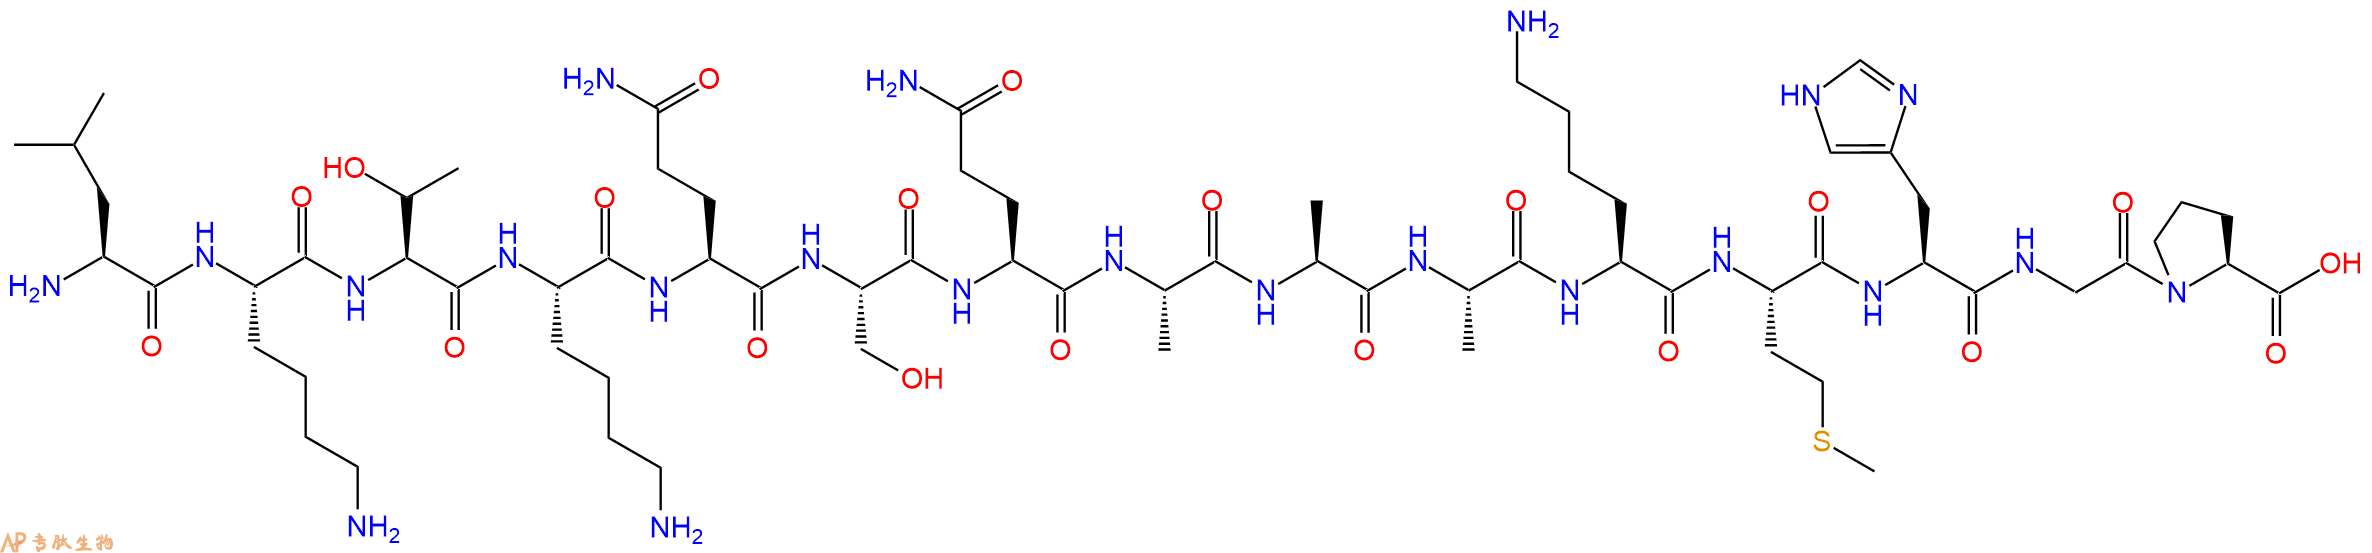 多肽LKTKQSQAAAKMHGP的参数和合成路线|三字母为Leu-Lys-Thr-Lys-Gln-